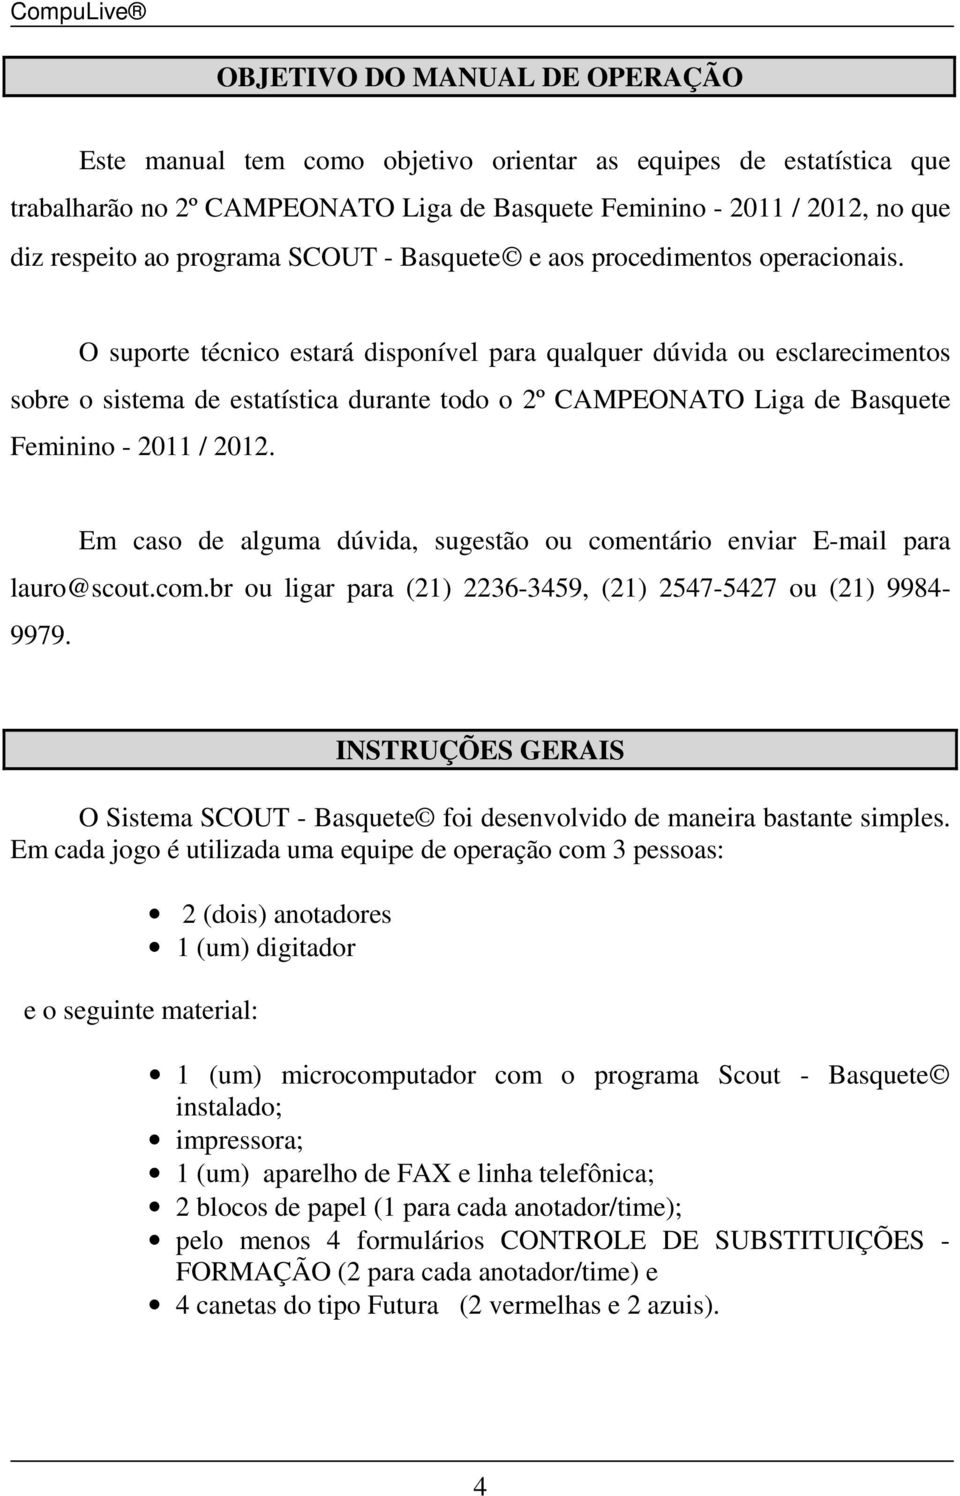 O suporte técnico estará disponível para qualquer dúvida ou esclarecimentos sobre o sistema de estatística durante todo o 2º CAMPEONATO Liga de Basquete Feminino - 2011 / 2012.